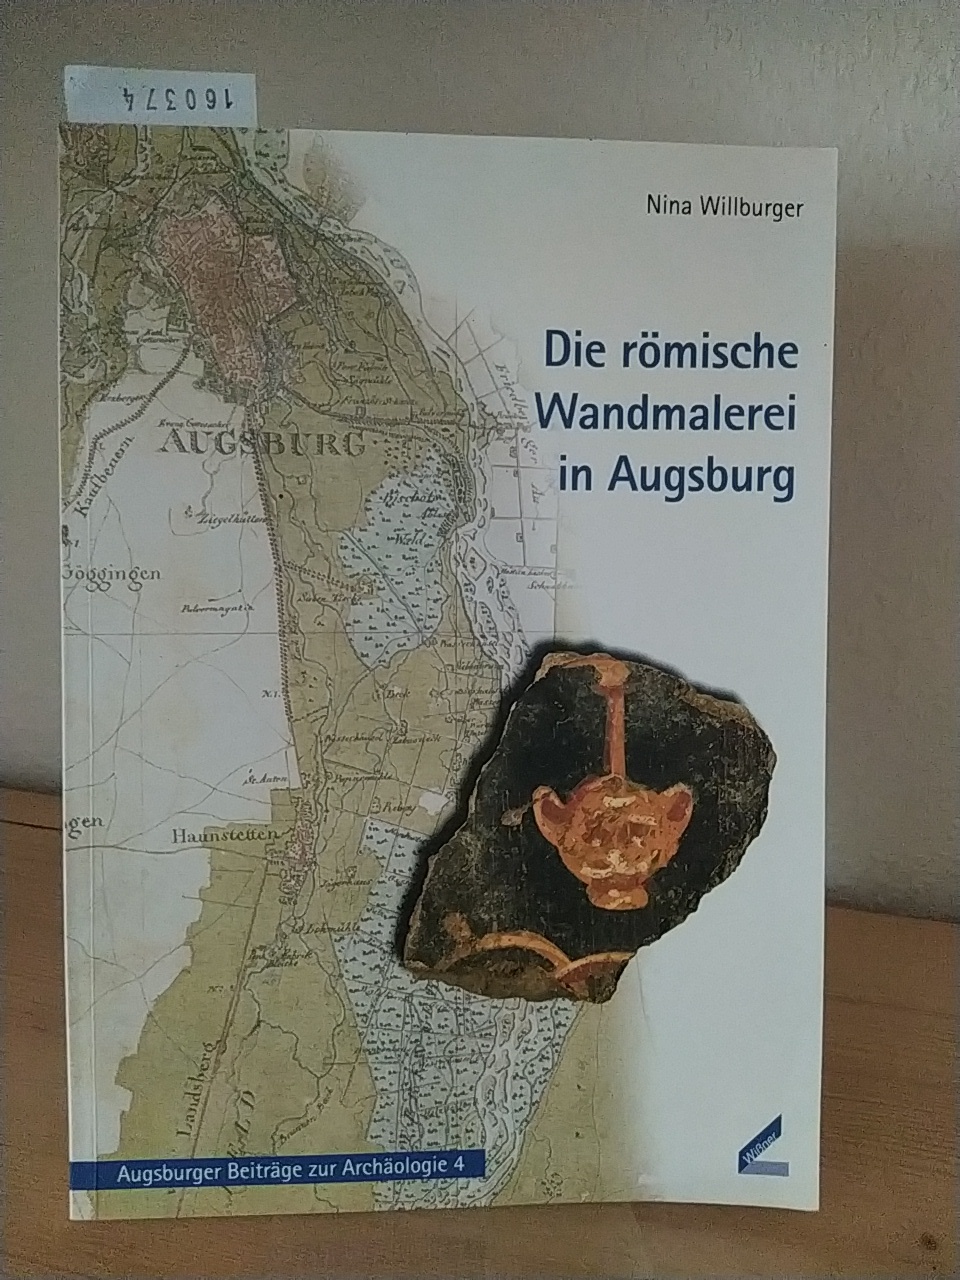 Die römische Wandmalerei in Augsburg. [Von Nina Willburger]. (= Augsburger Beiträge zur Archäologie, 4). - Willburger, Nina